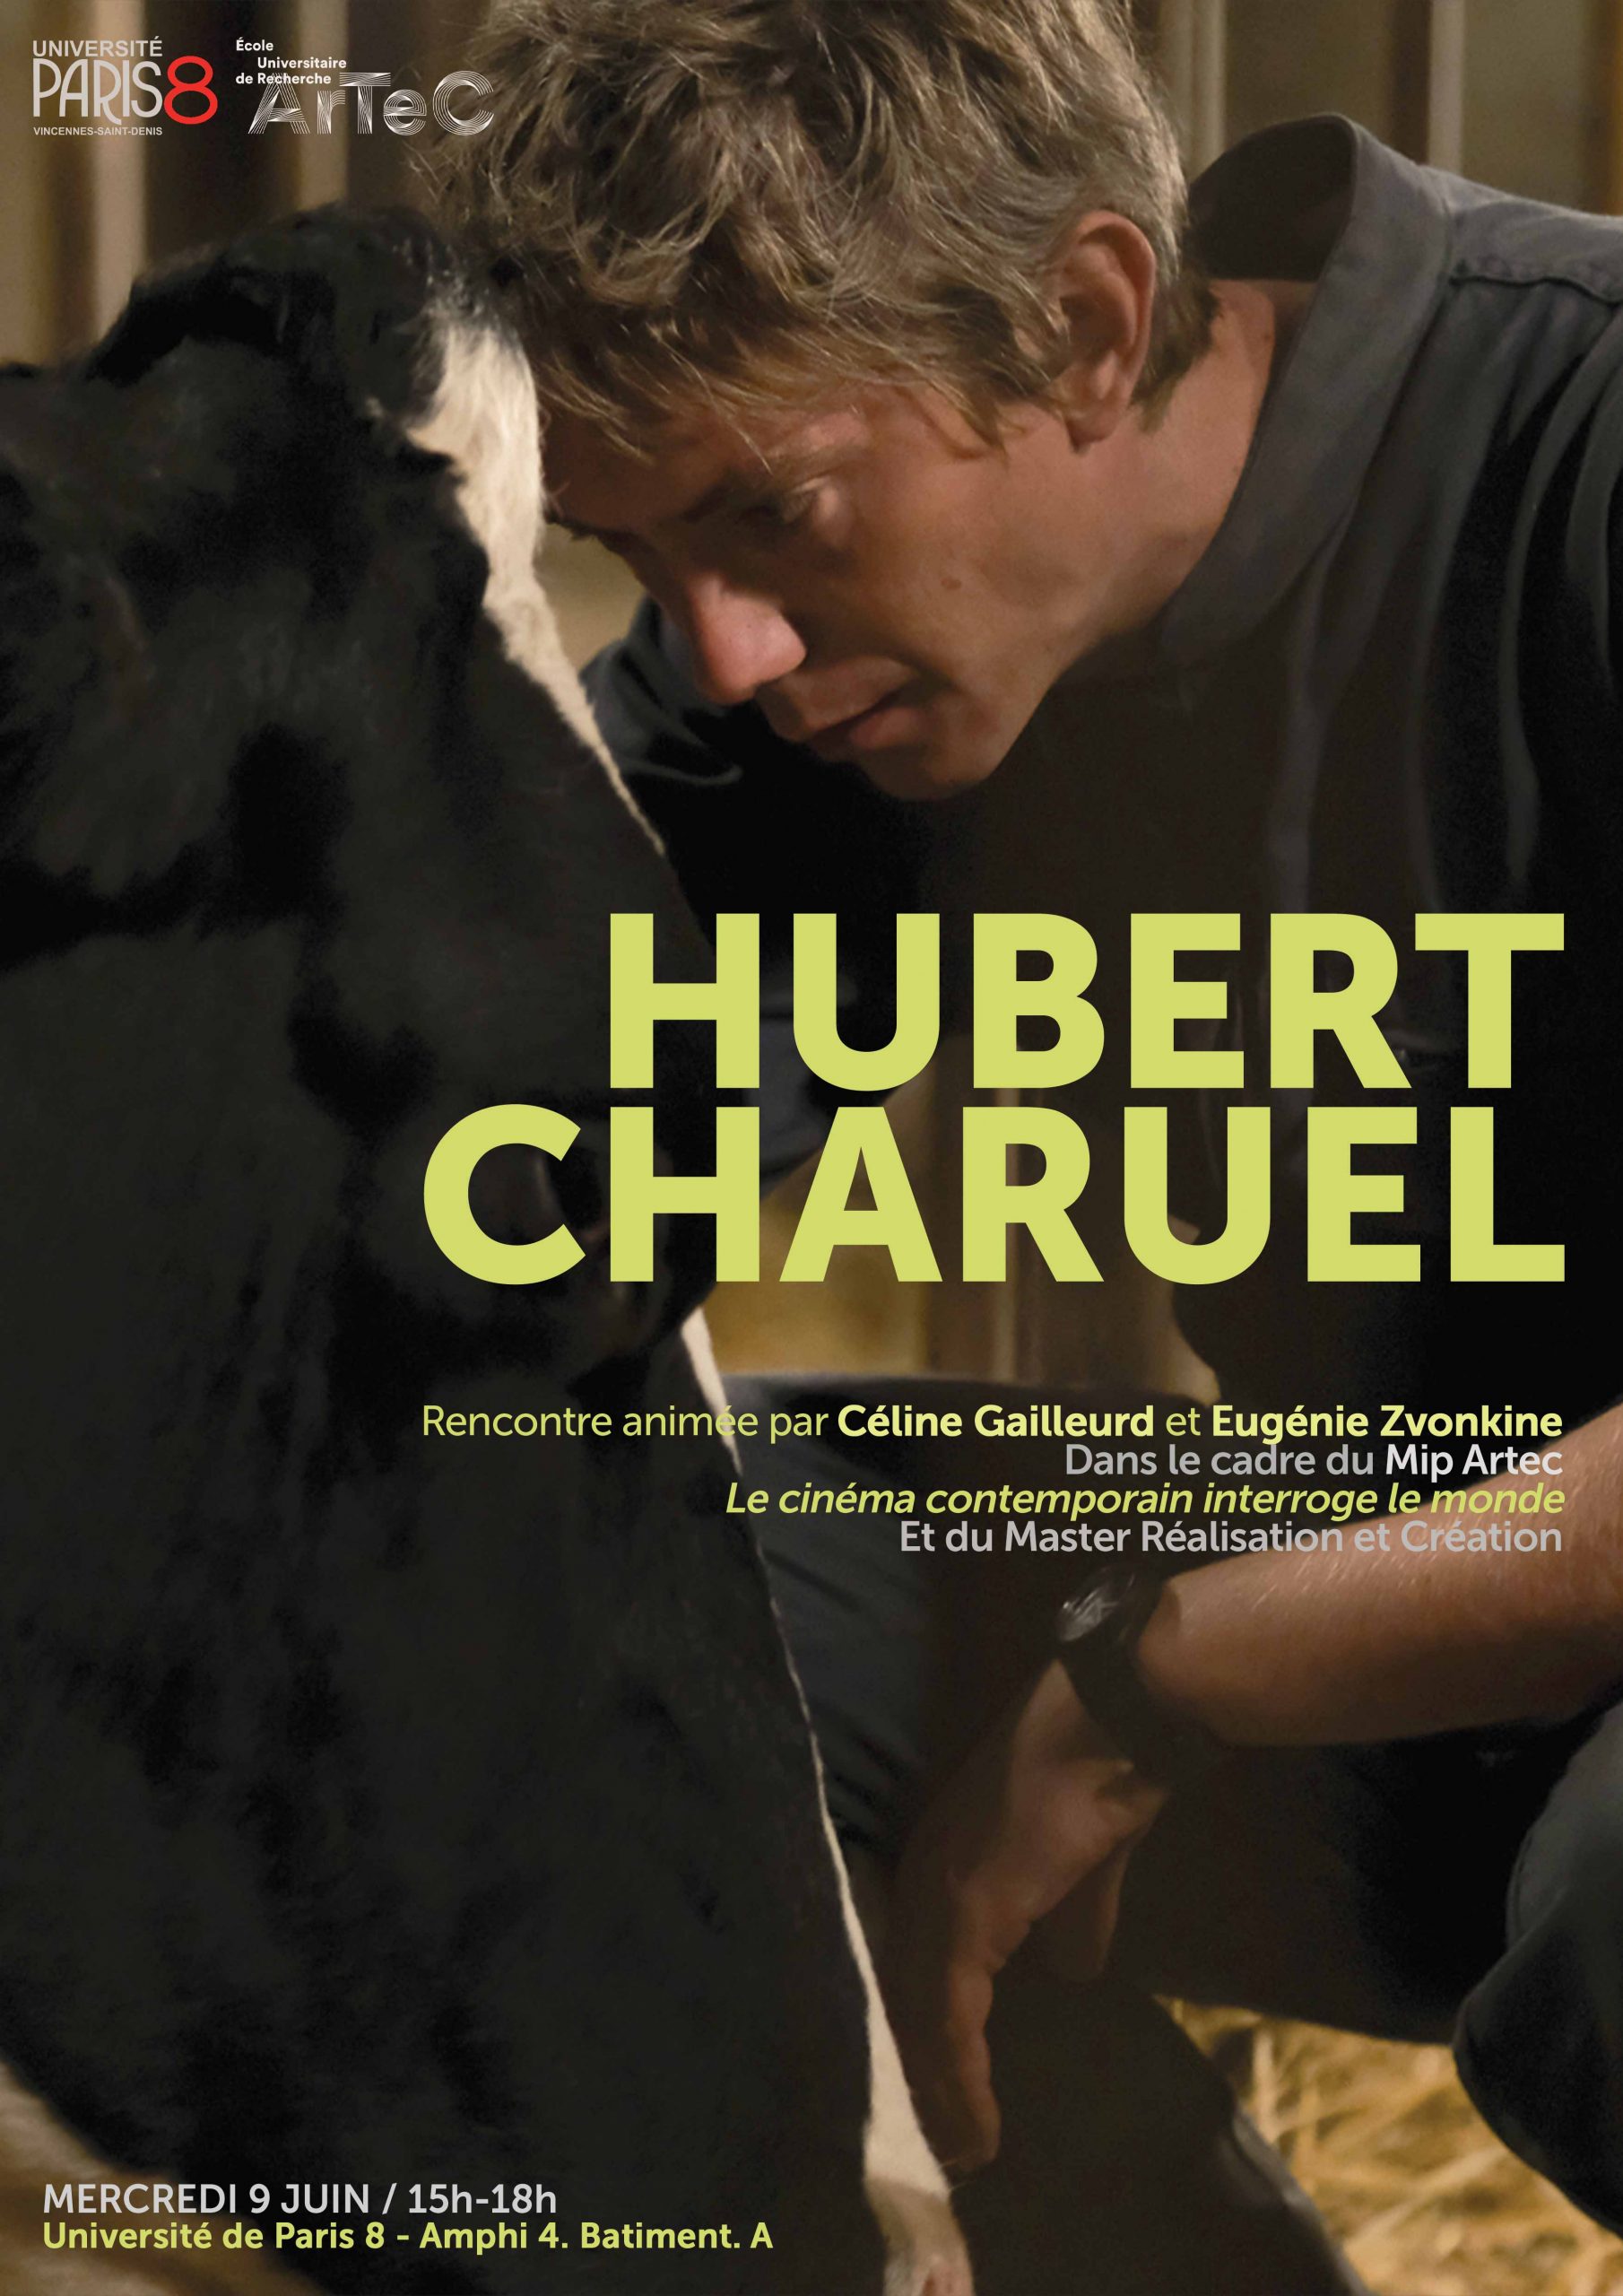 Rencontre avec Hubert Charuel